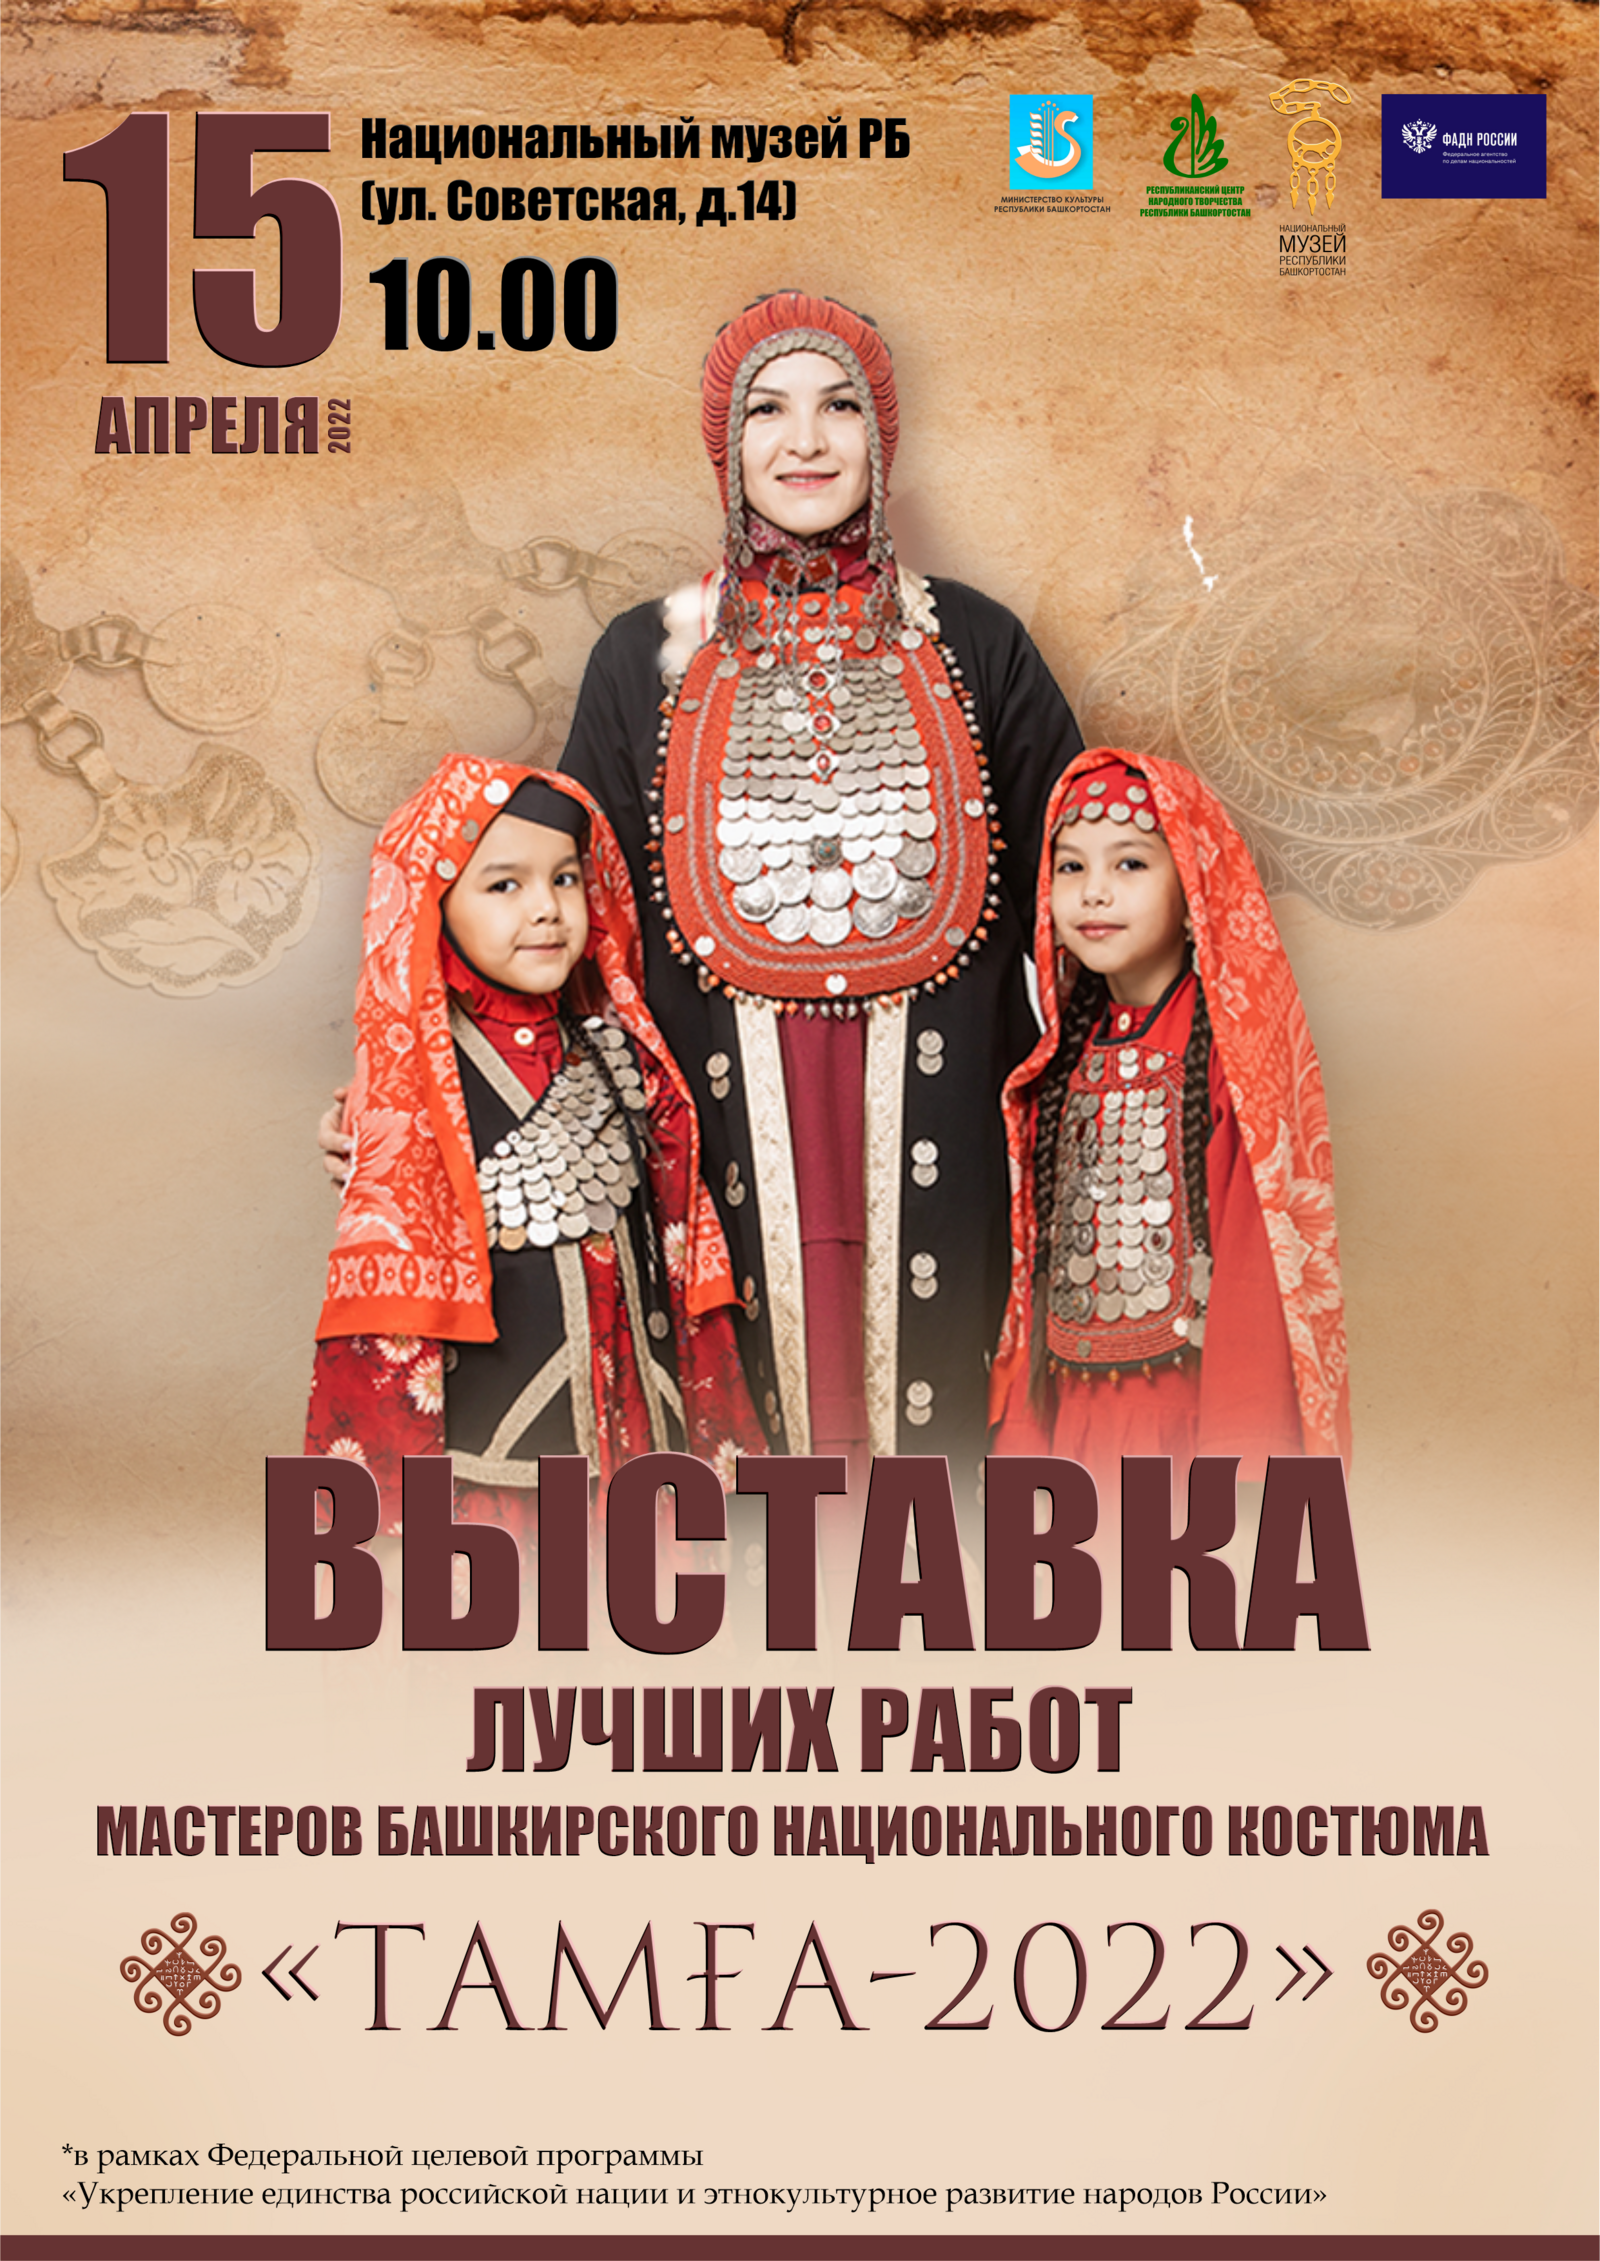 Состоится выставка лучших работ II Международного конкурса мастеров башкирского национального костюма «Тамға»